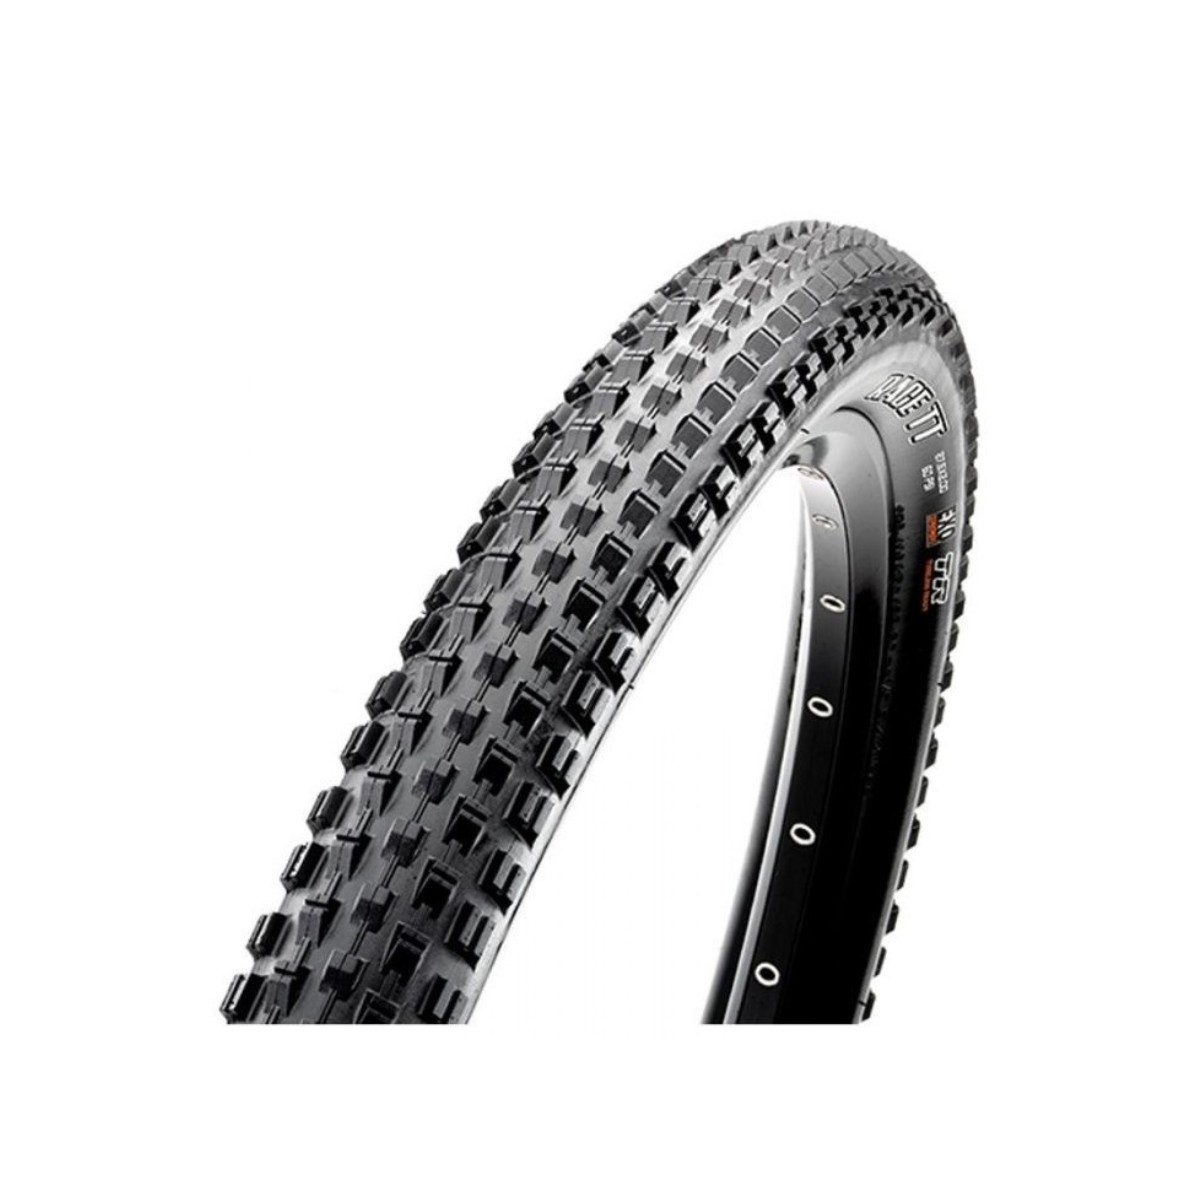 maxxis pneu race tt tubeless ready exo 29x2.20 pliable 56-622 noir